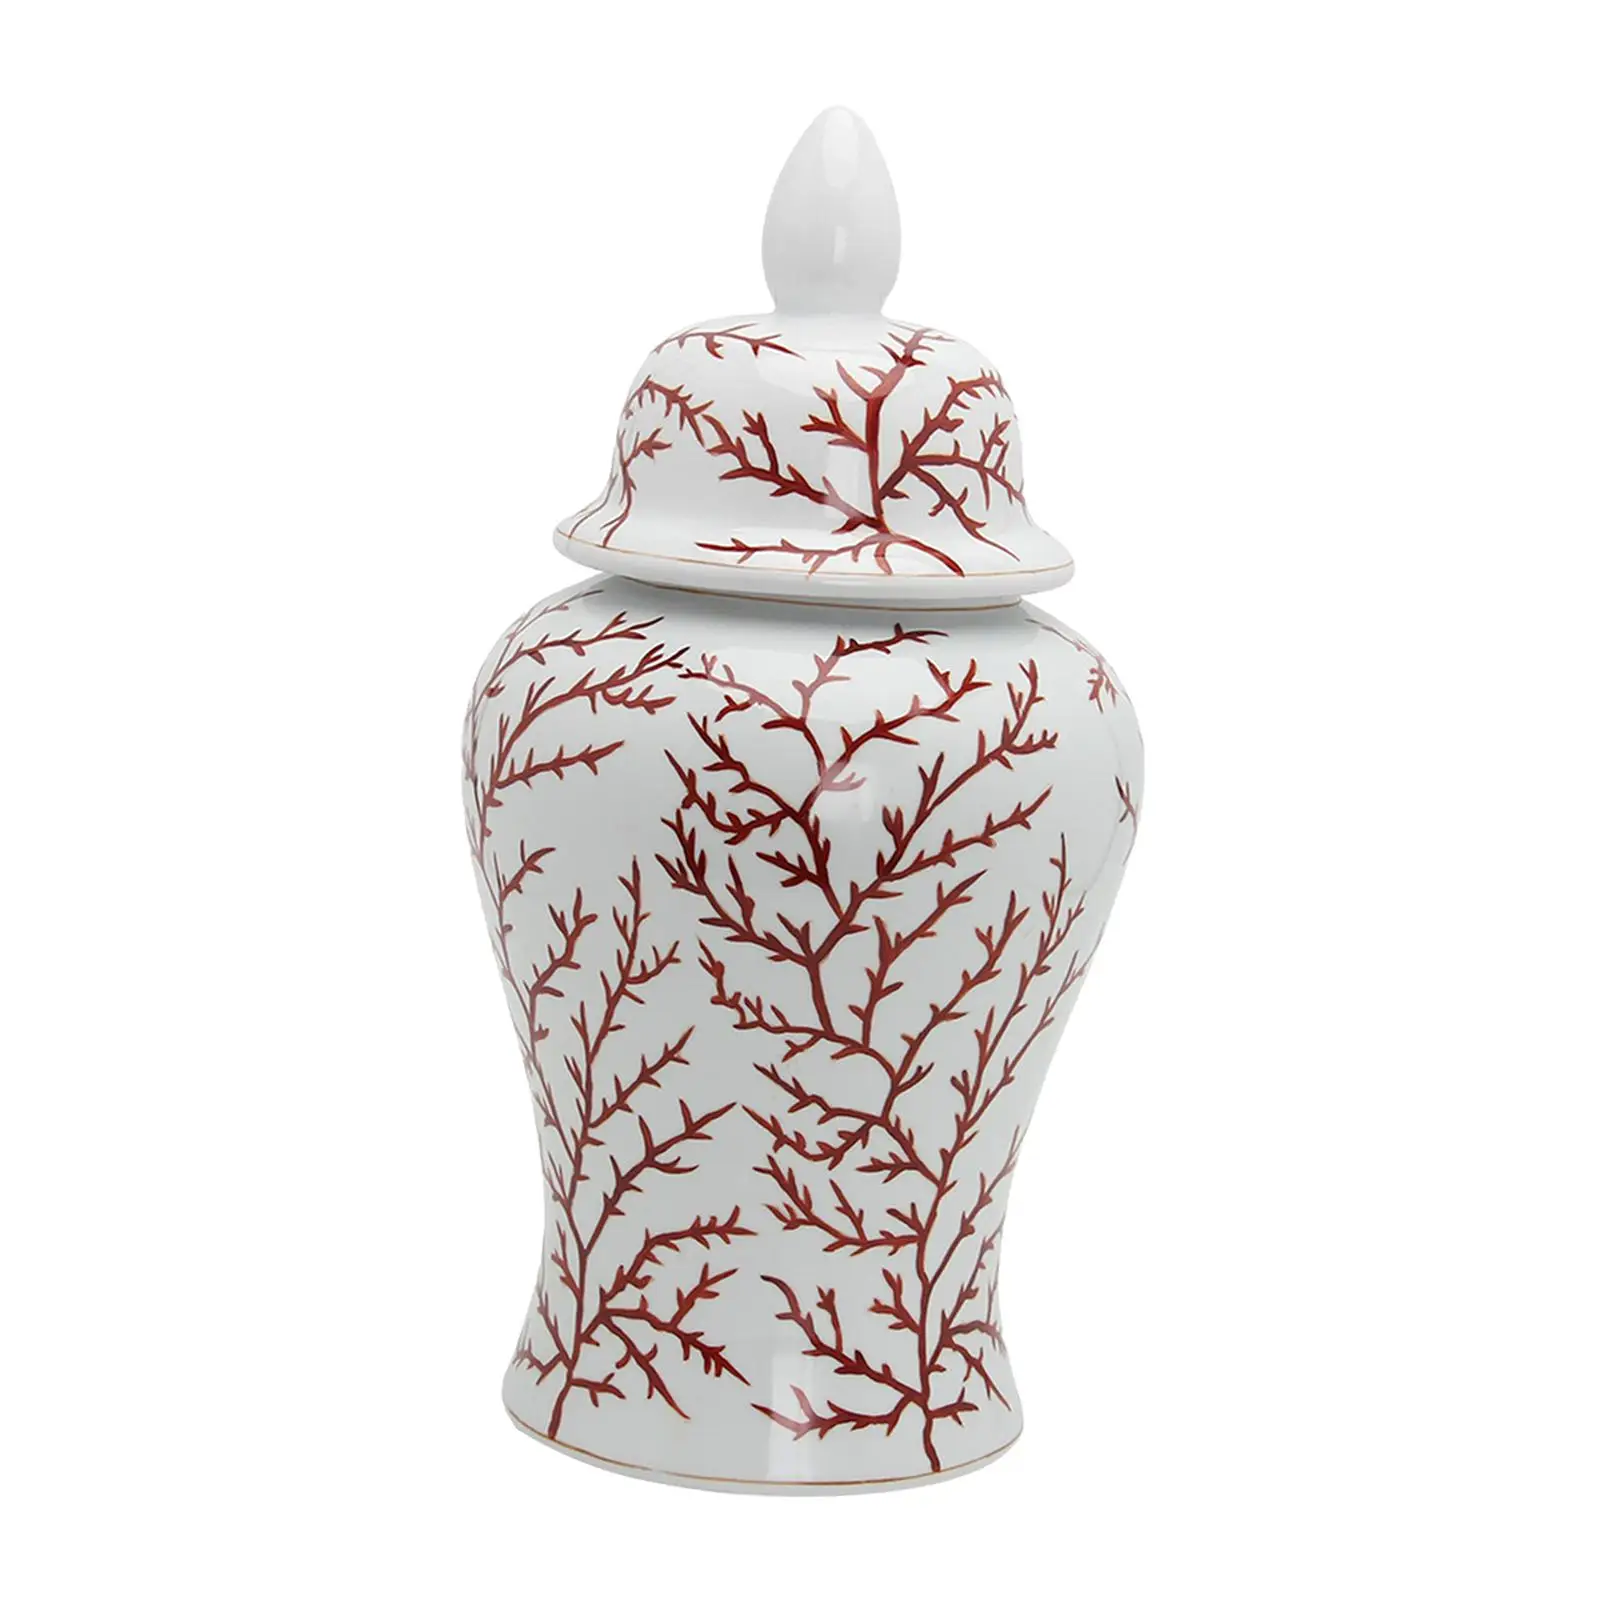 

Modern Ceramic Ginger Jar Vase Temple Jars Porcelain Jar Ornament Table Centerpiece Floral Arrangement Vase